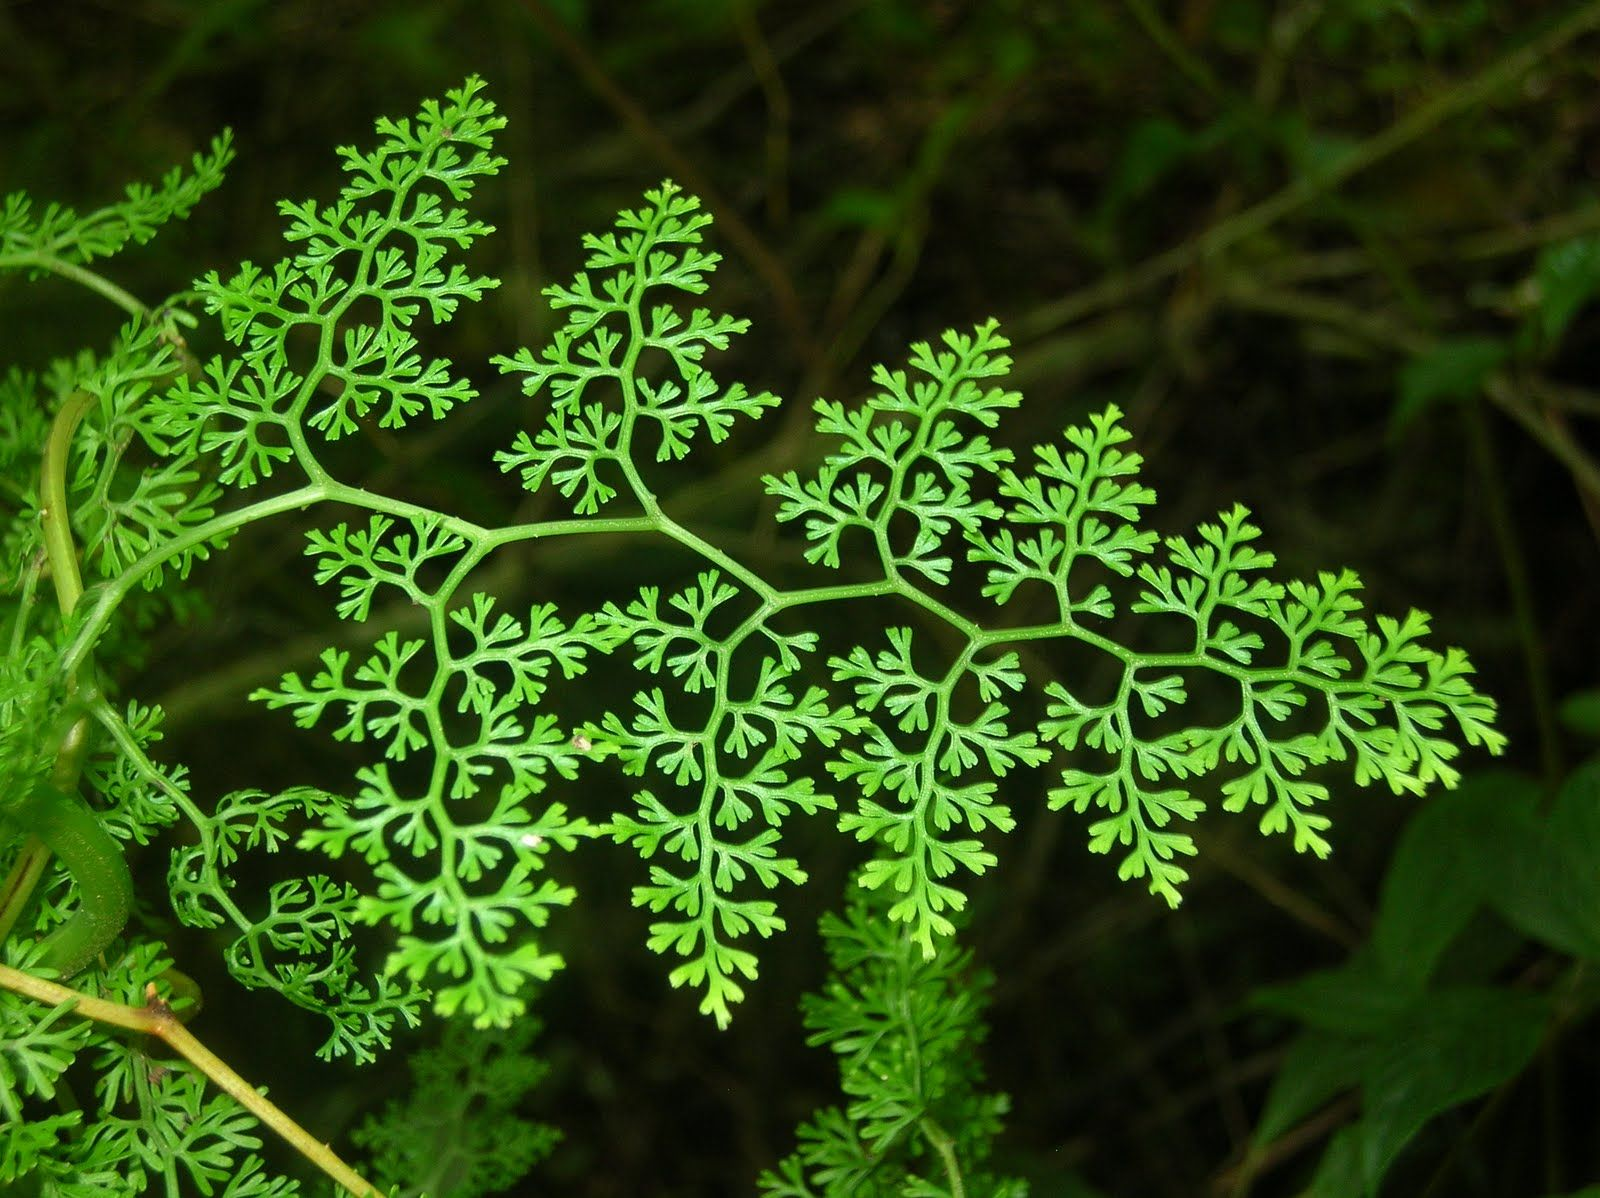 a plant showing a fractal